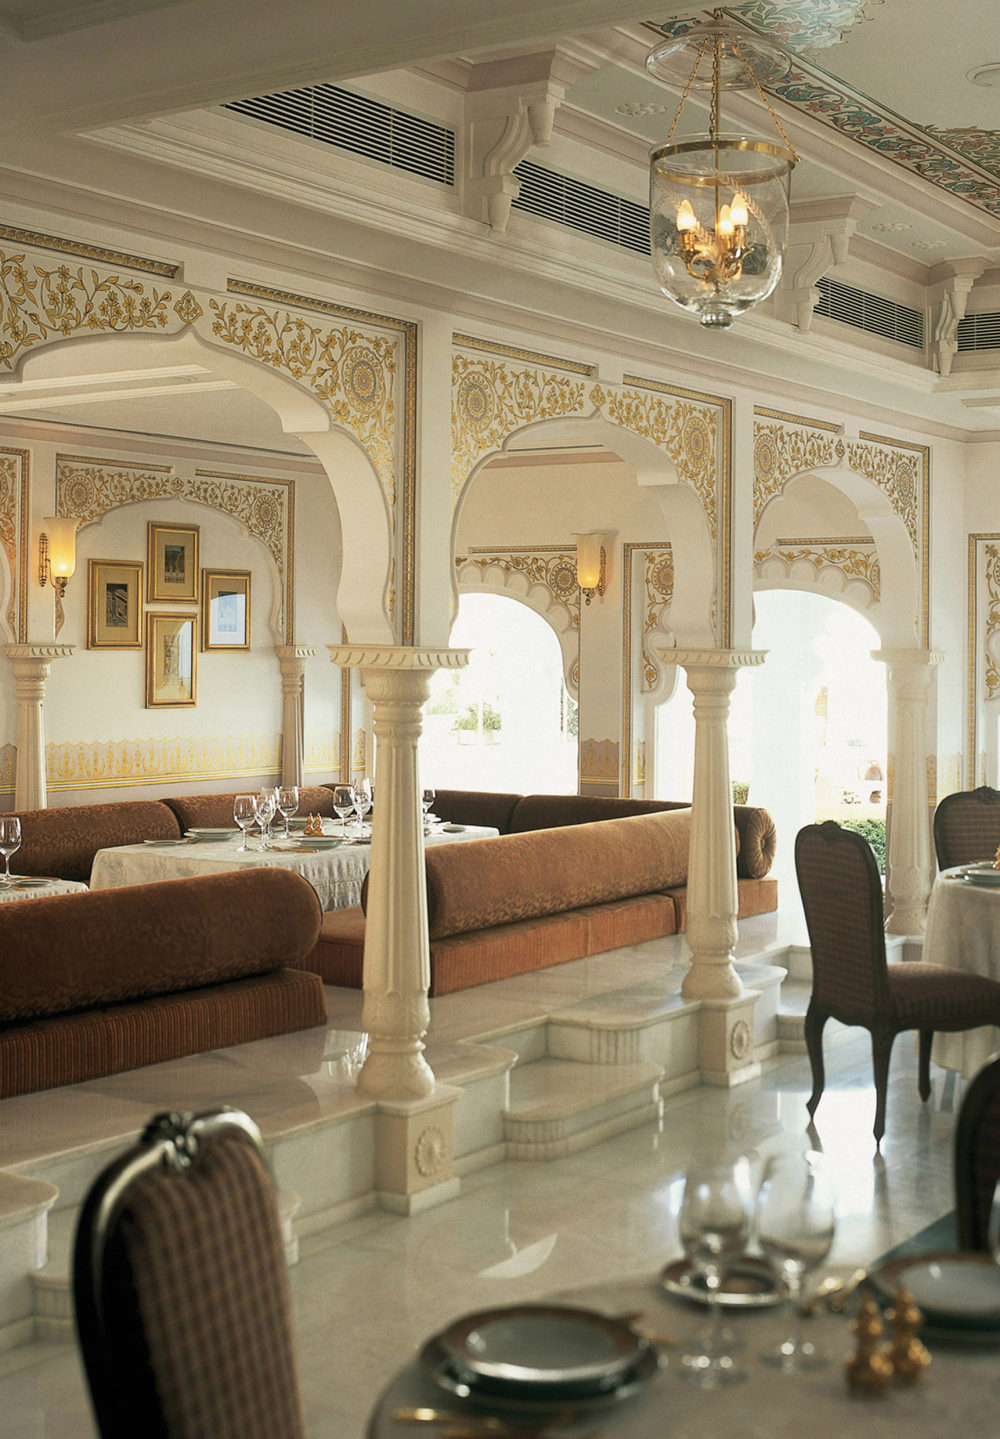 印度乌代浦尔泰姬湖皇宫酒店 Taj Lake Palace_27642388-H1-H0KNKL1B.JPG